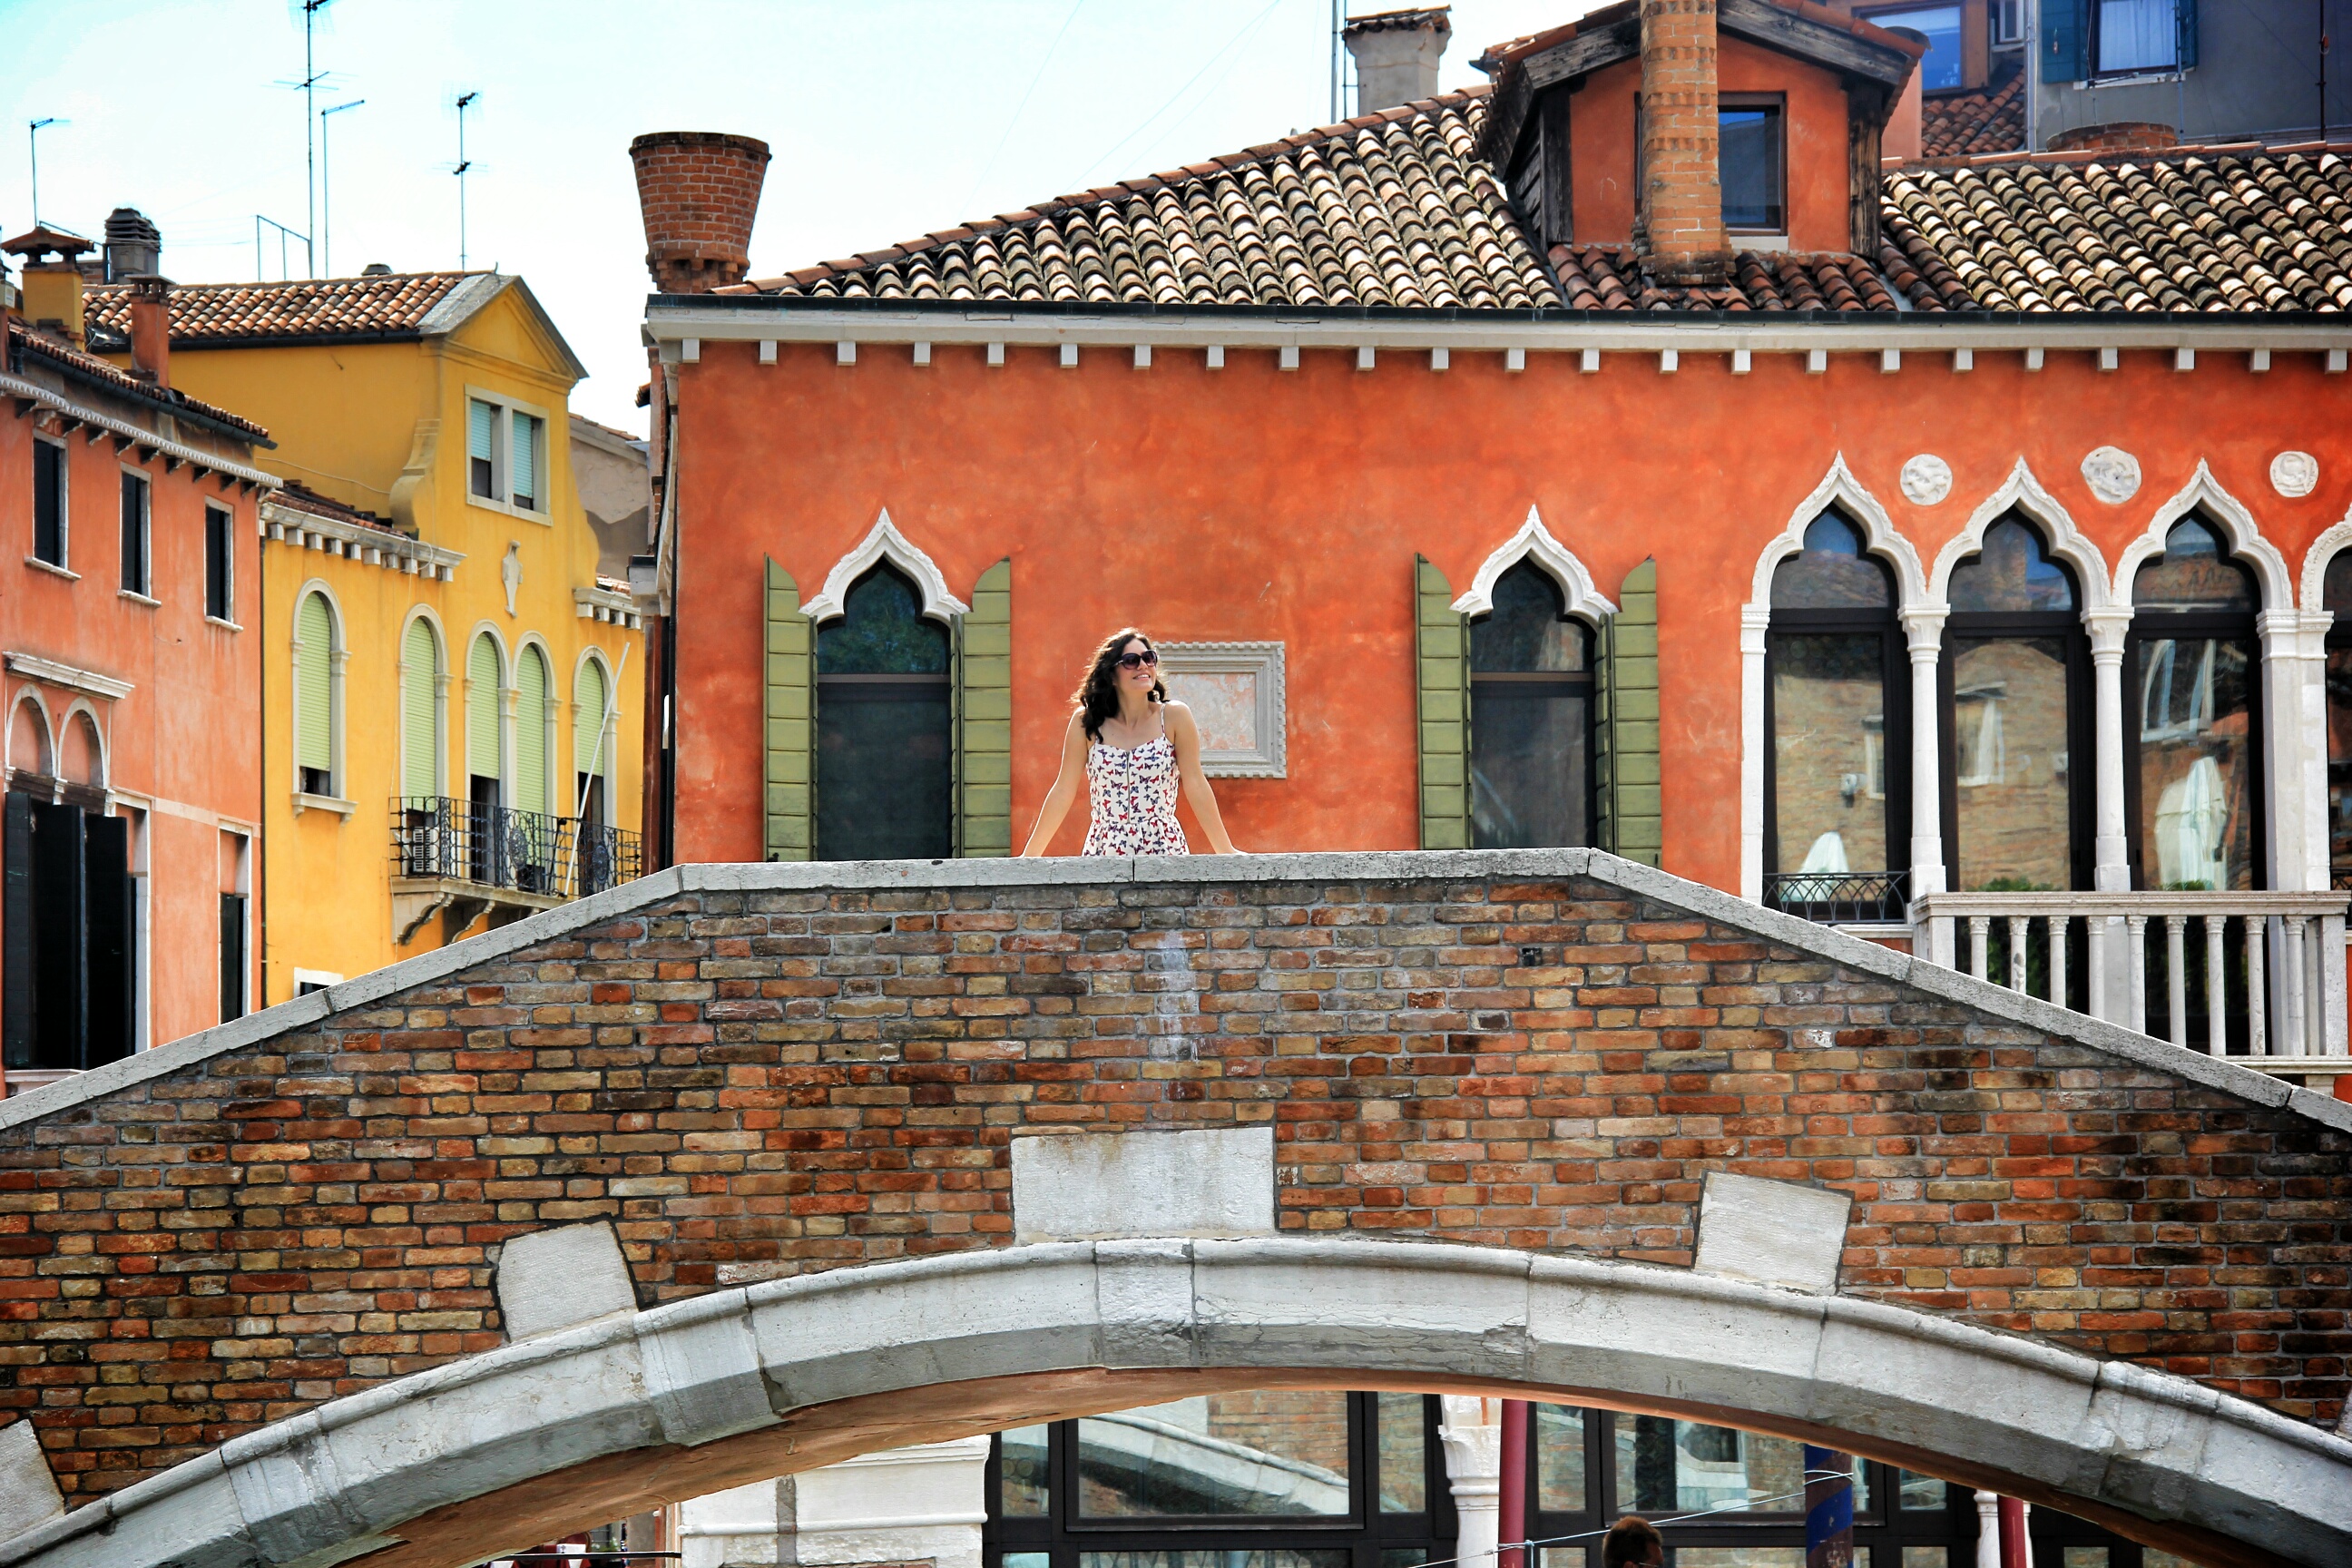 Venedik sadece kanallar değil, birbirinden güzel evlere sahip.